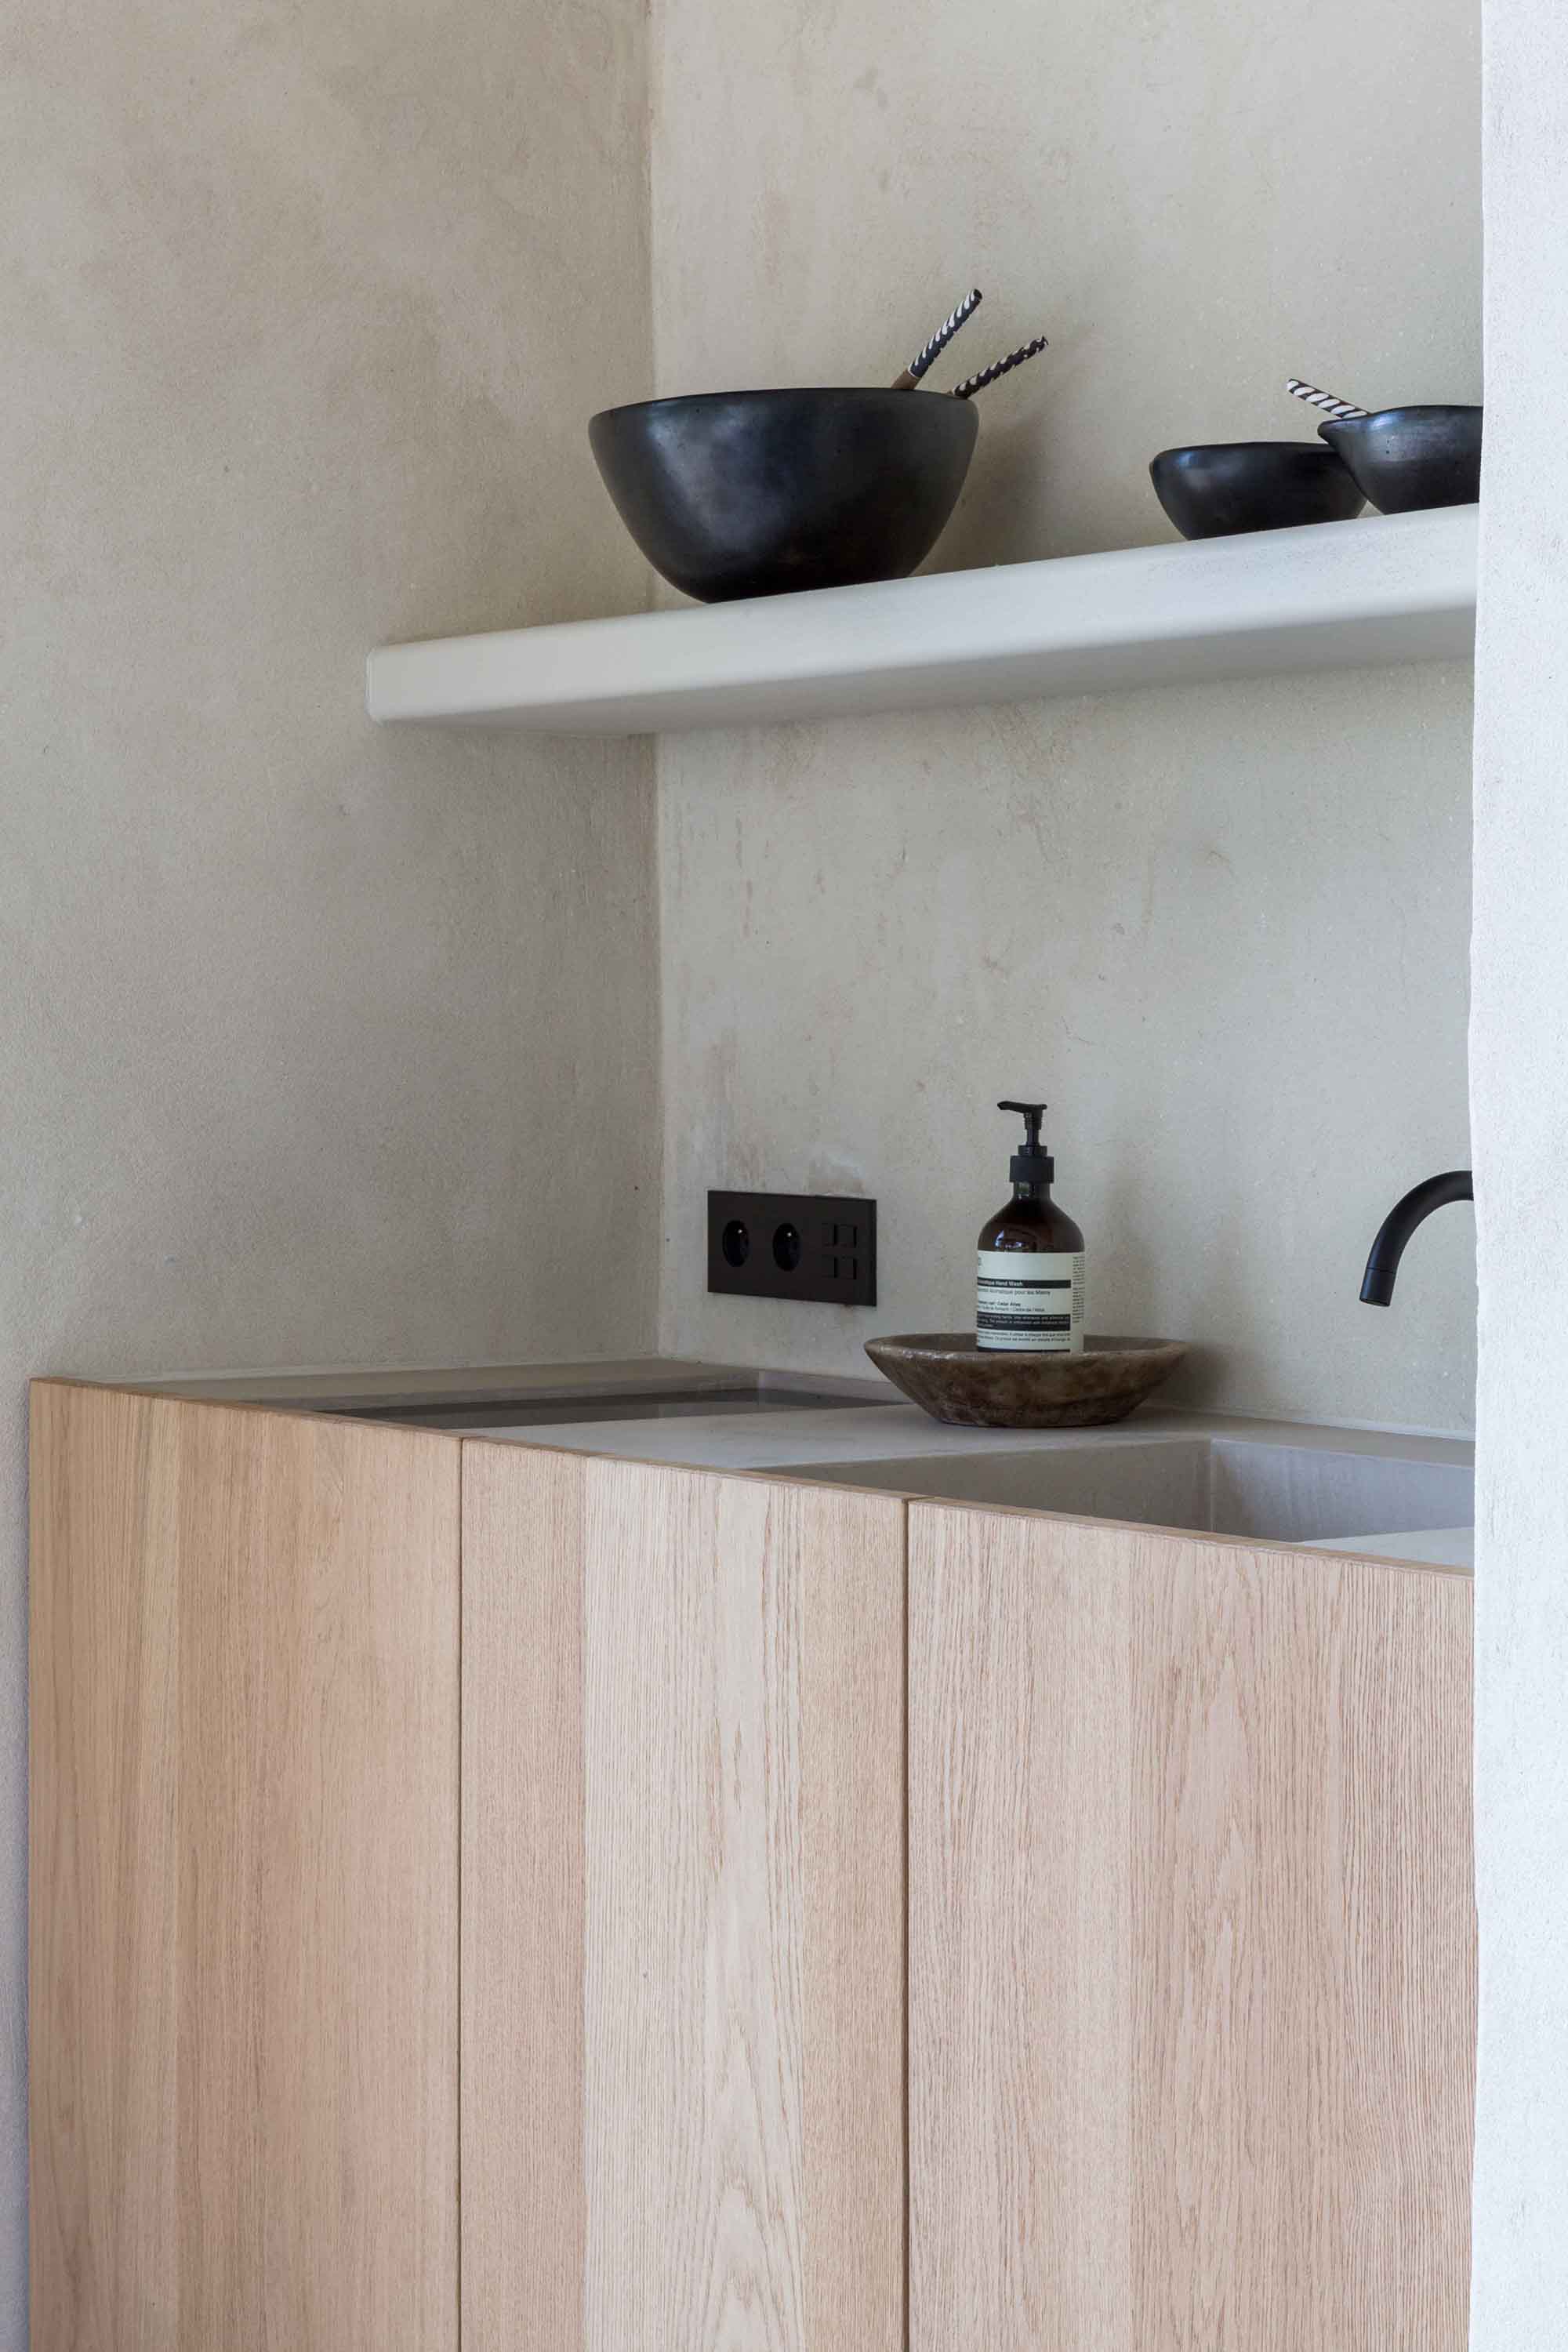 The imperfect kitchen via Ollie & Sebs Haus 